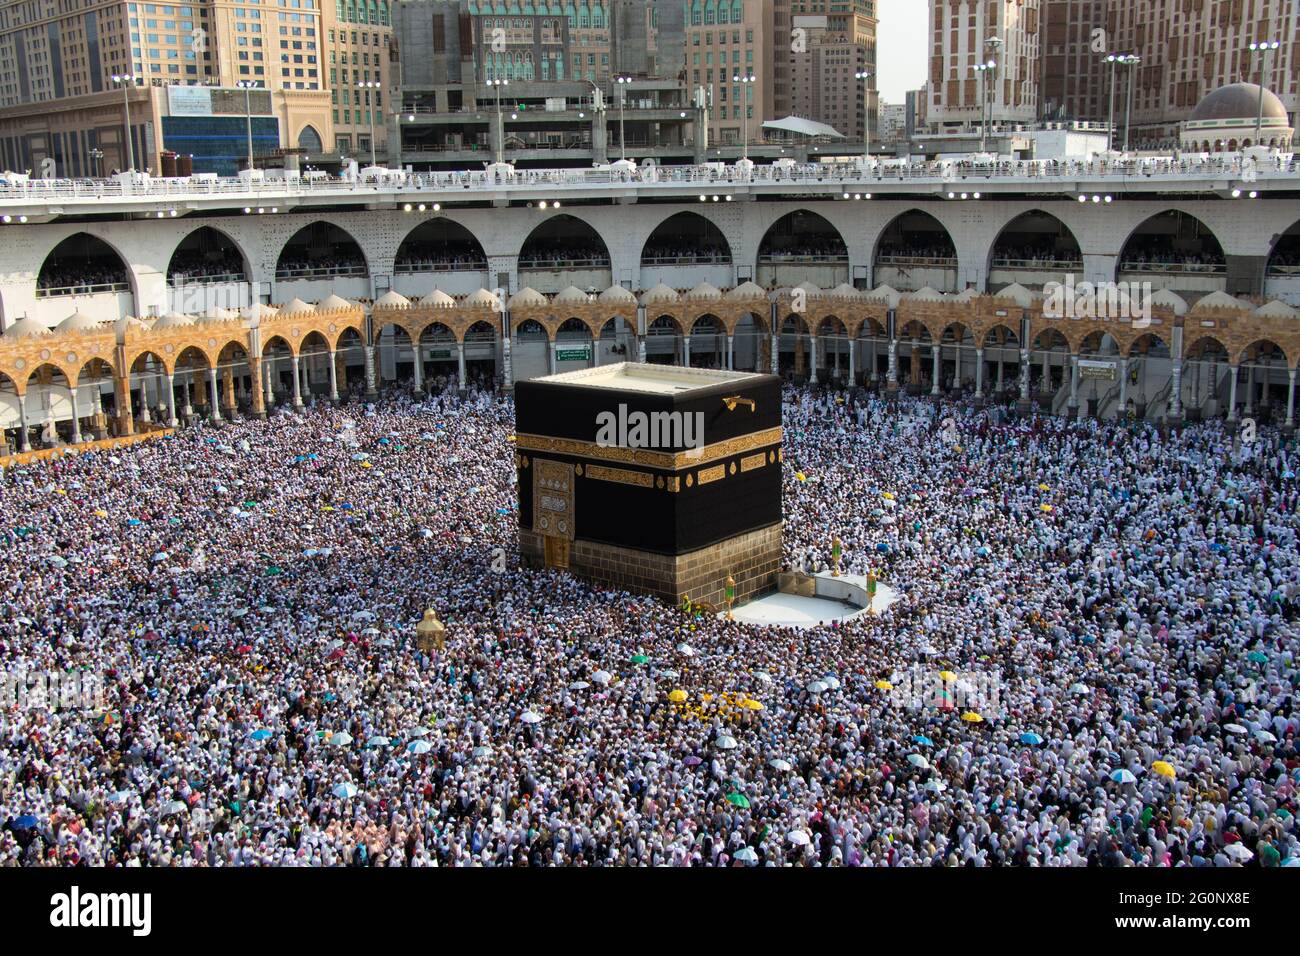 Heilige Kaaba. Menschenmenge, die immer um Kaaba herumläuft. Ritual der Umkreisung - Tawaf während der Pilgerfahrt. Mekka - Saudi-Arabien Stockfoto